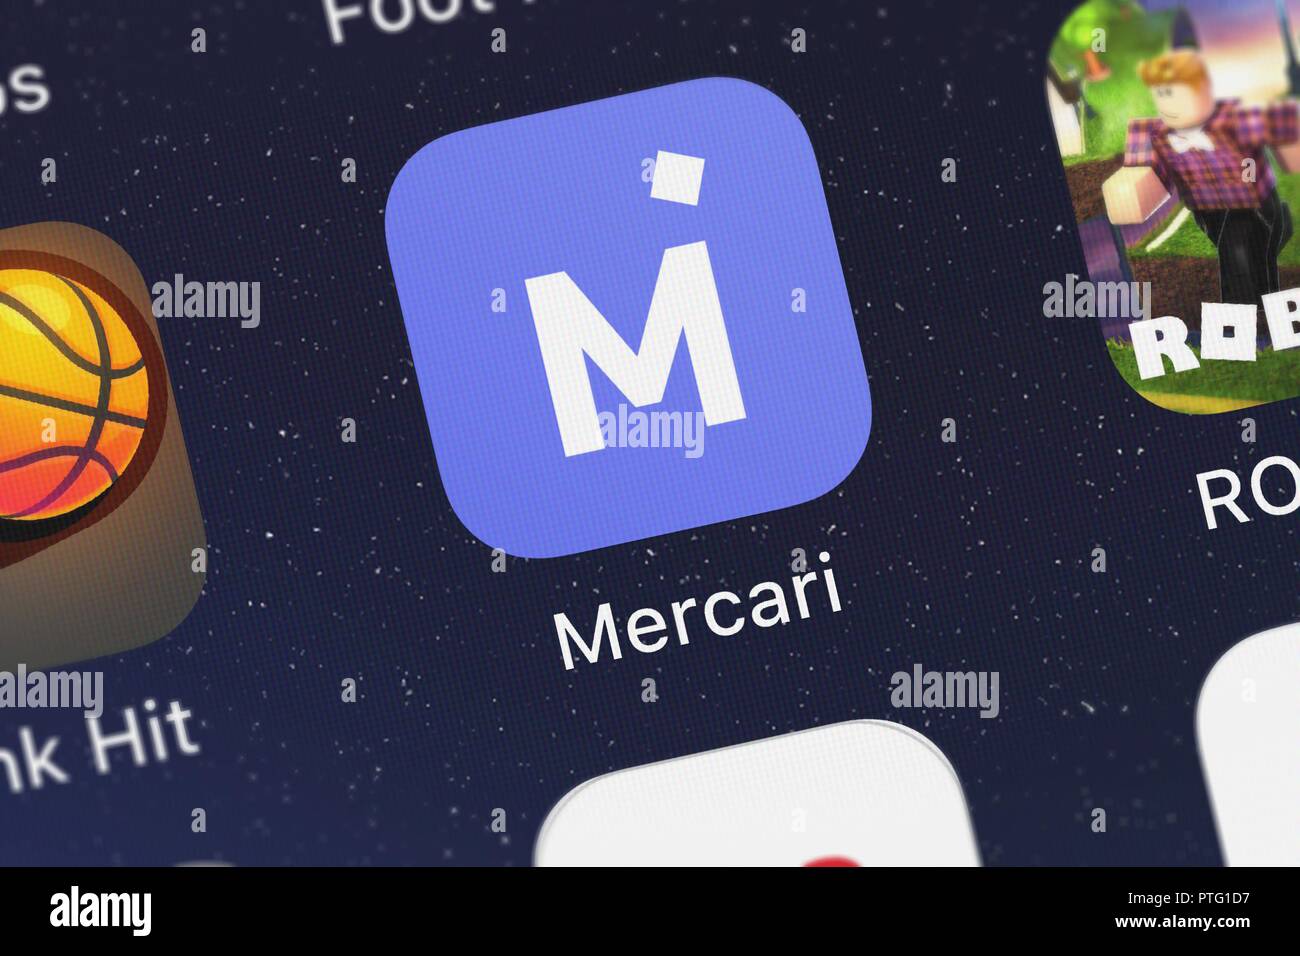 43 Best Images Mercari The Selling App - Mercari The Selling App Ios Lifestyle App Apps Lifestyle Apps App Iphone Games